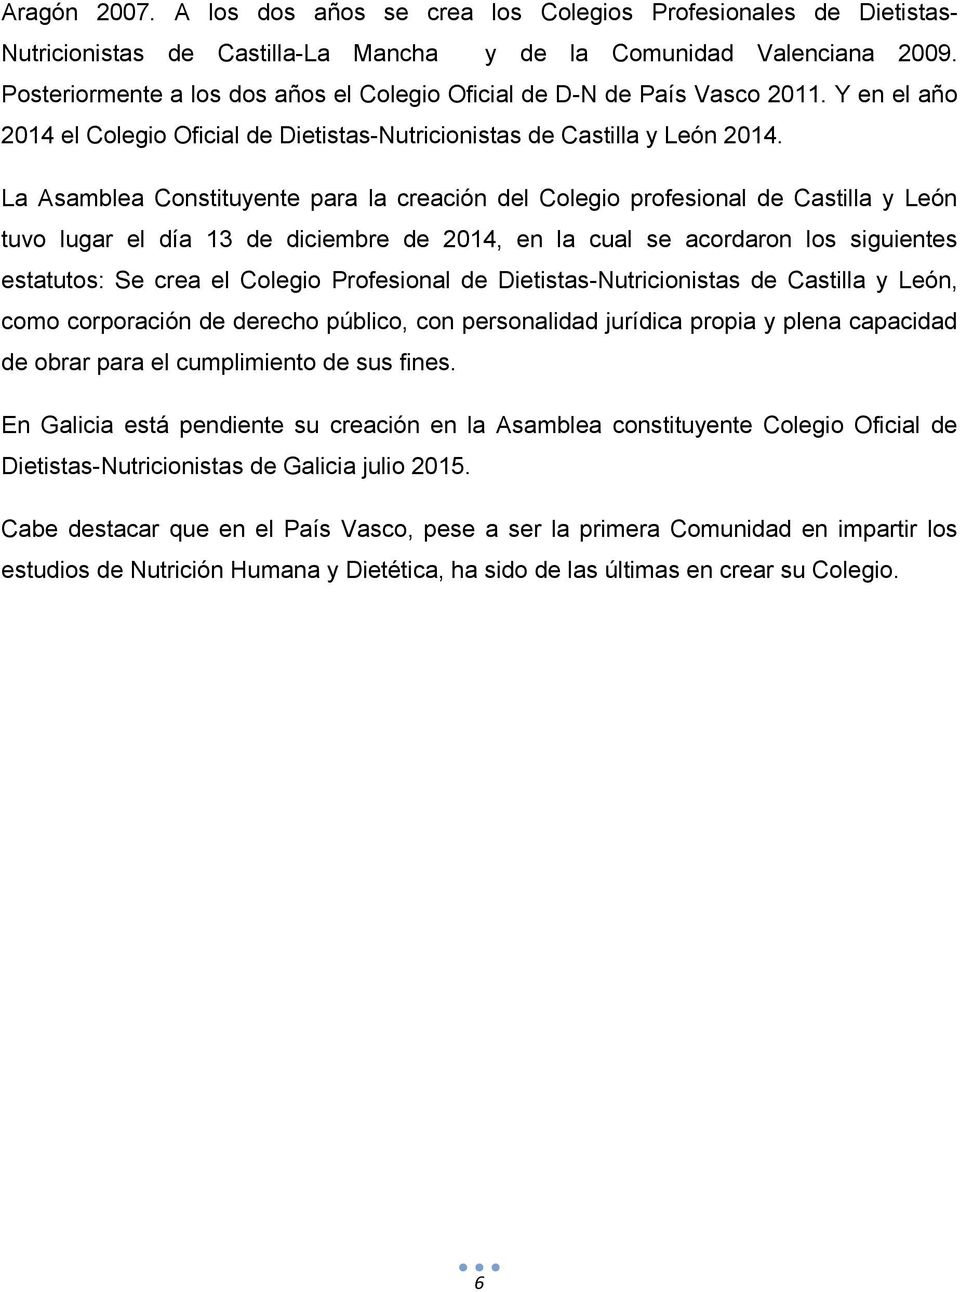 La Asamblea Constituyente para la creación del Colegio profesional de Castilla y León tuvo lugar el día 13 de diciembre de 2014, en la cual se acordaron los siguientes estatutos: Se crea el Colegio